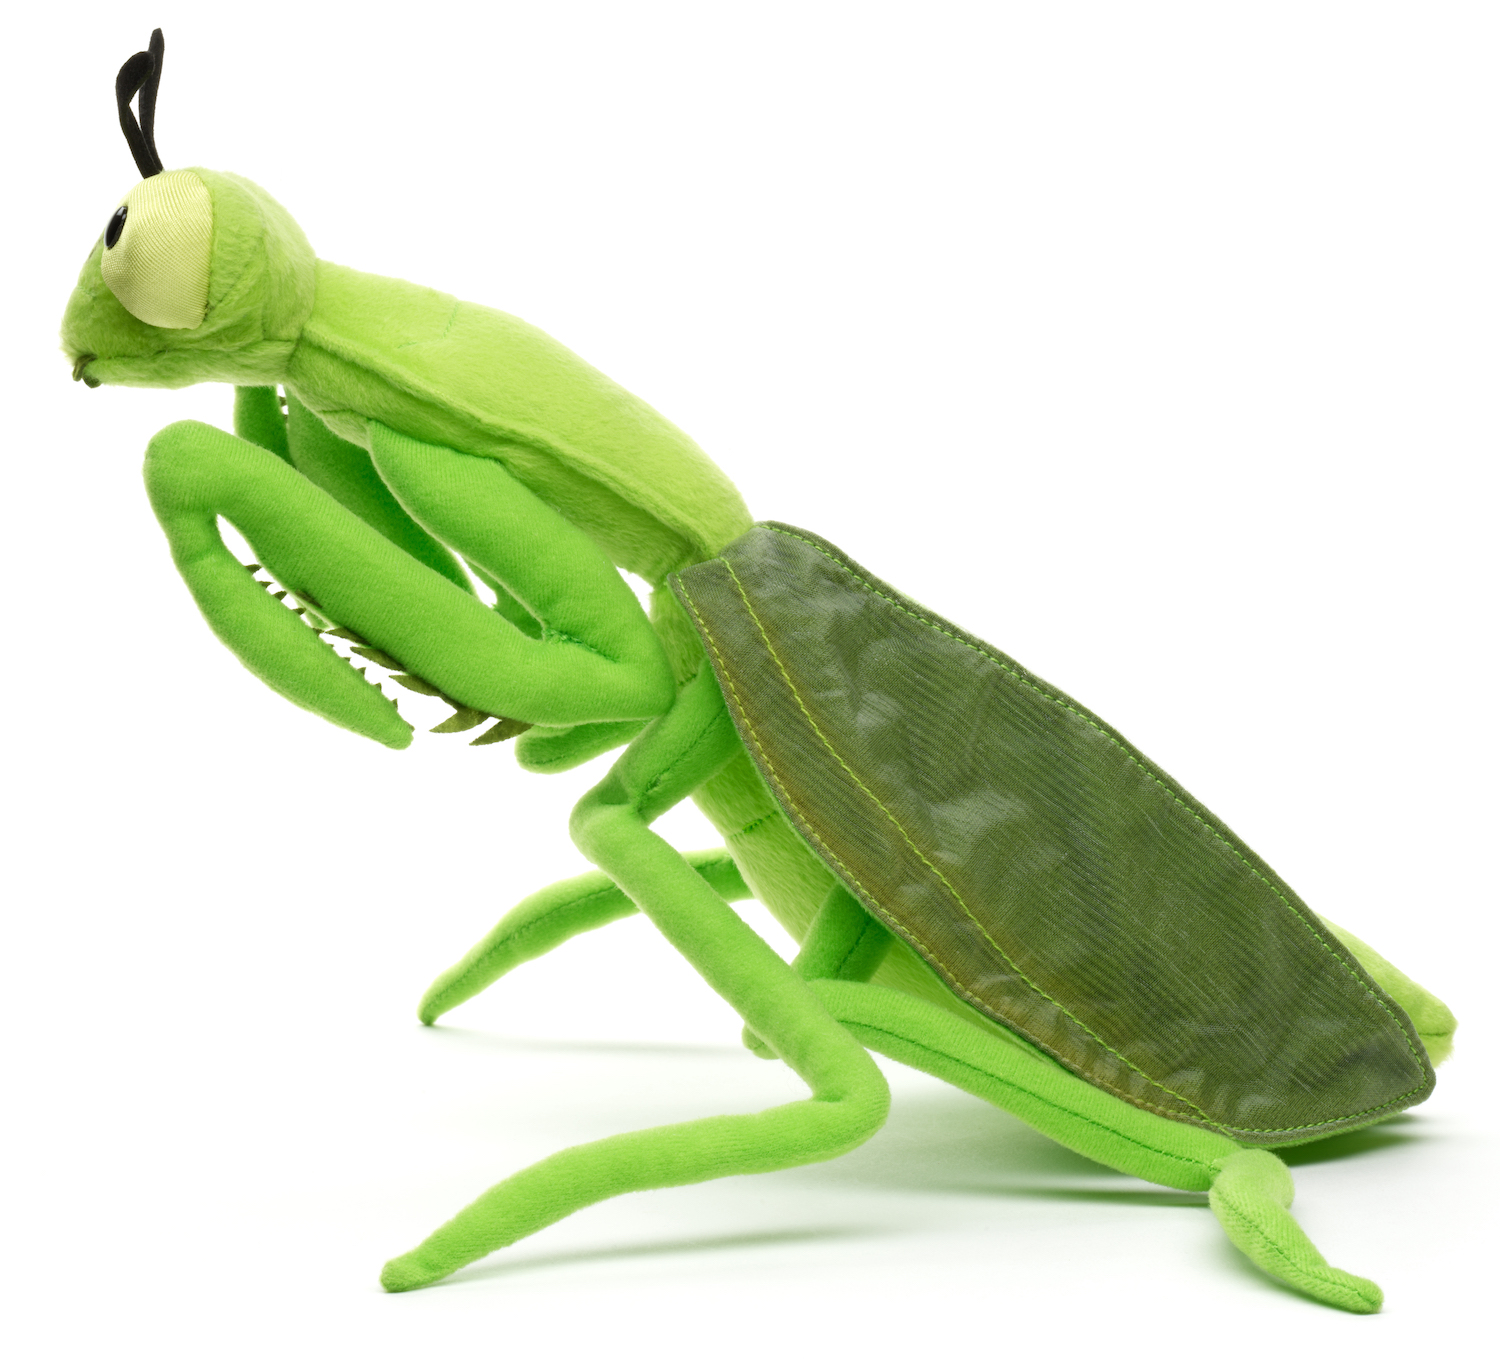  praying mantis - 34 cm (length)